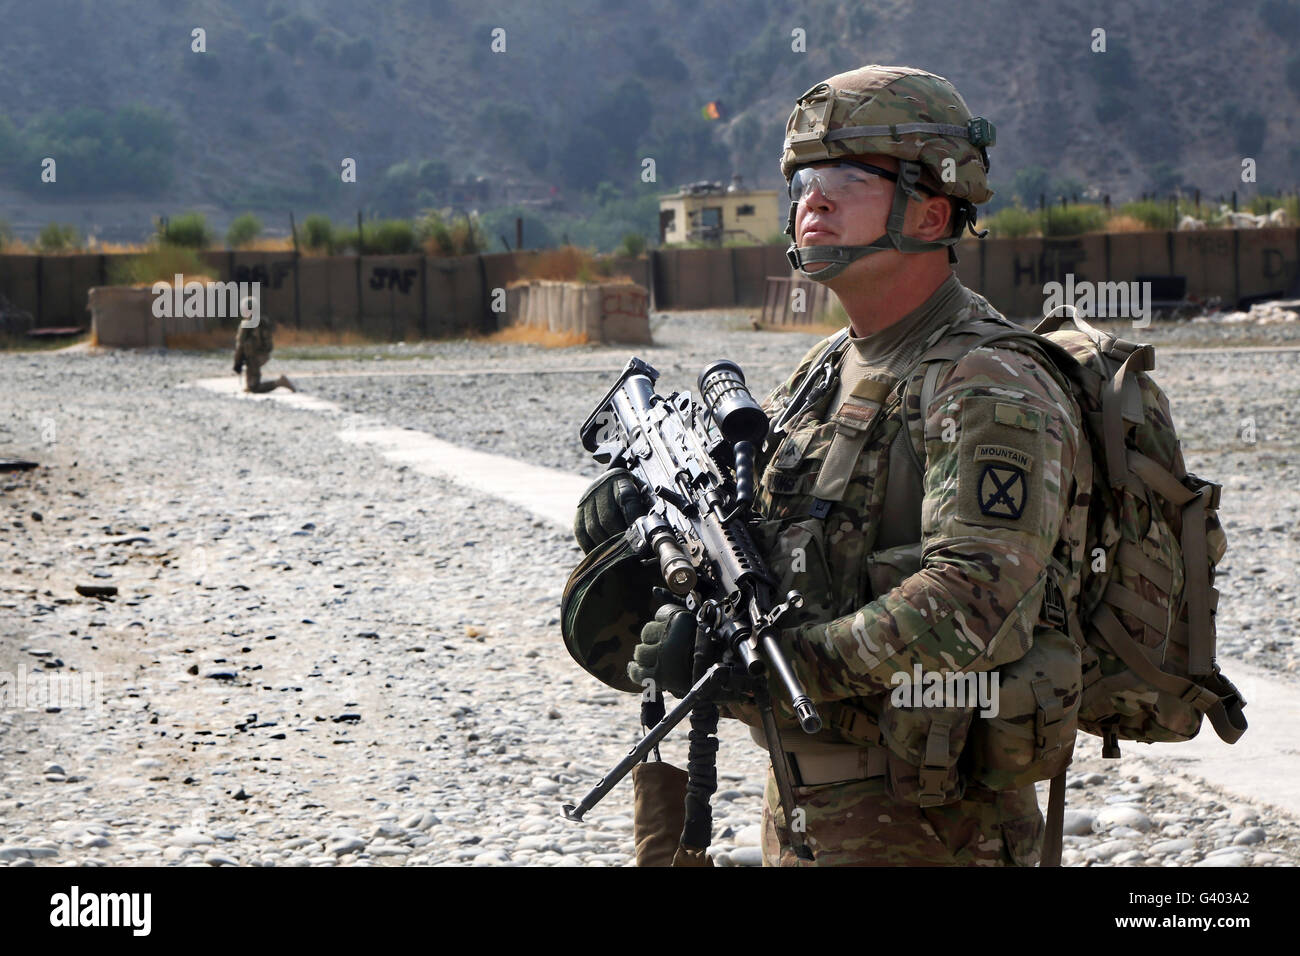 Soldat de l'armée américaine fournit une surveillance à l'aérodrome en Afghanistan. Banque D'Images